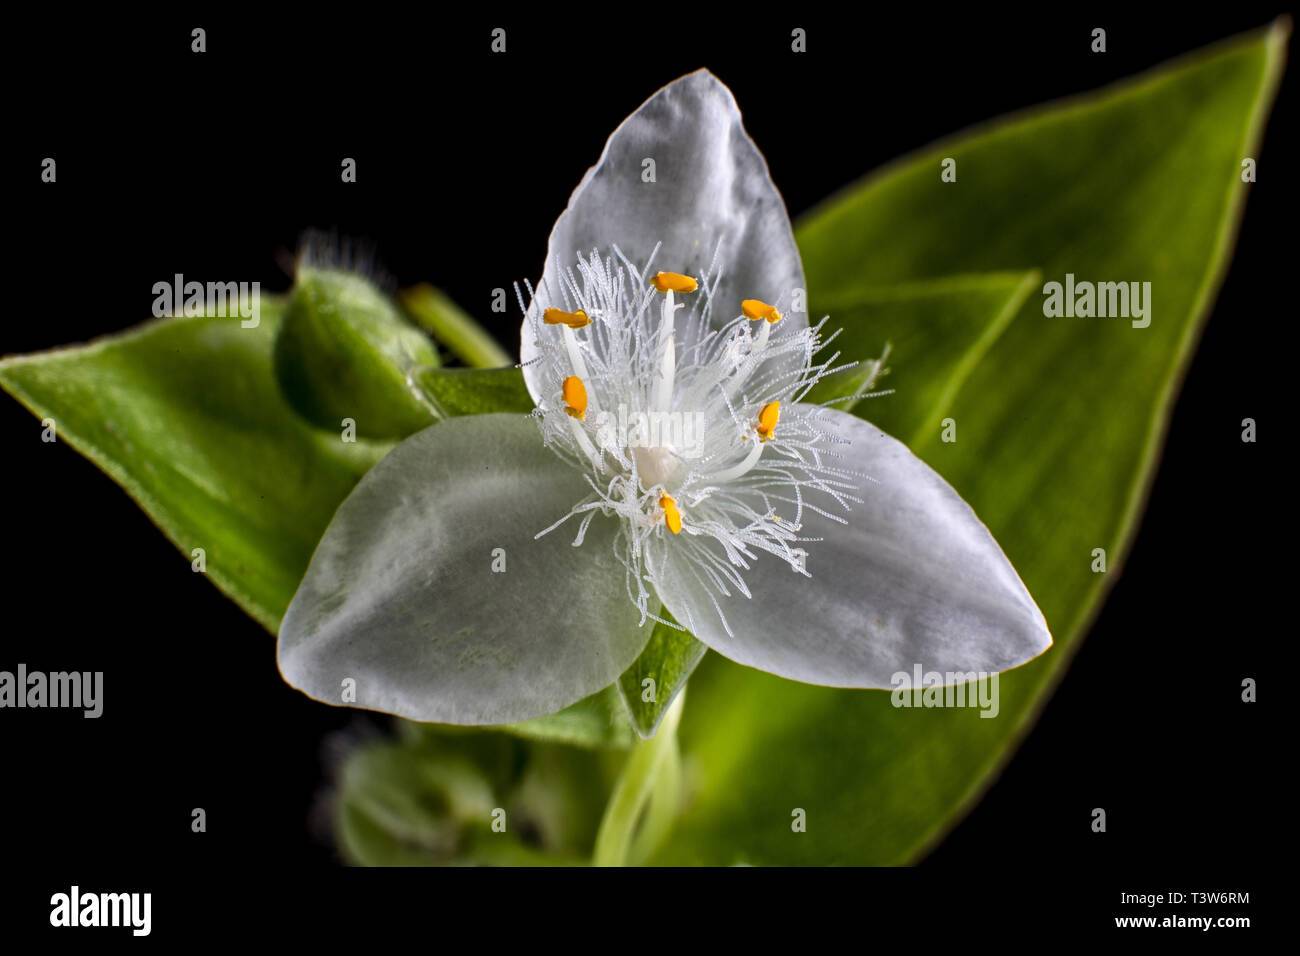 Detalles macro flor tradescantia Foto de stock